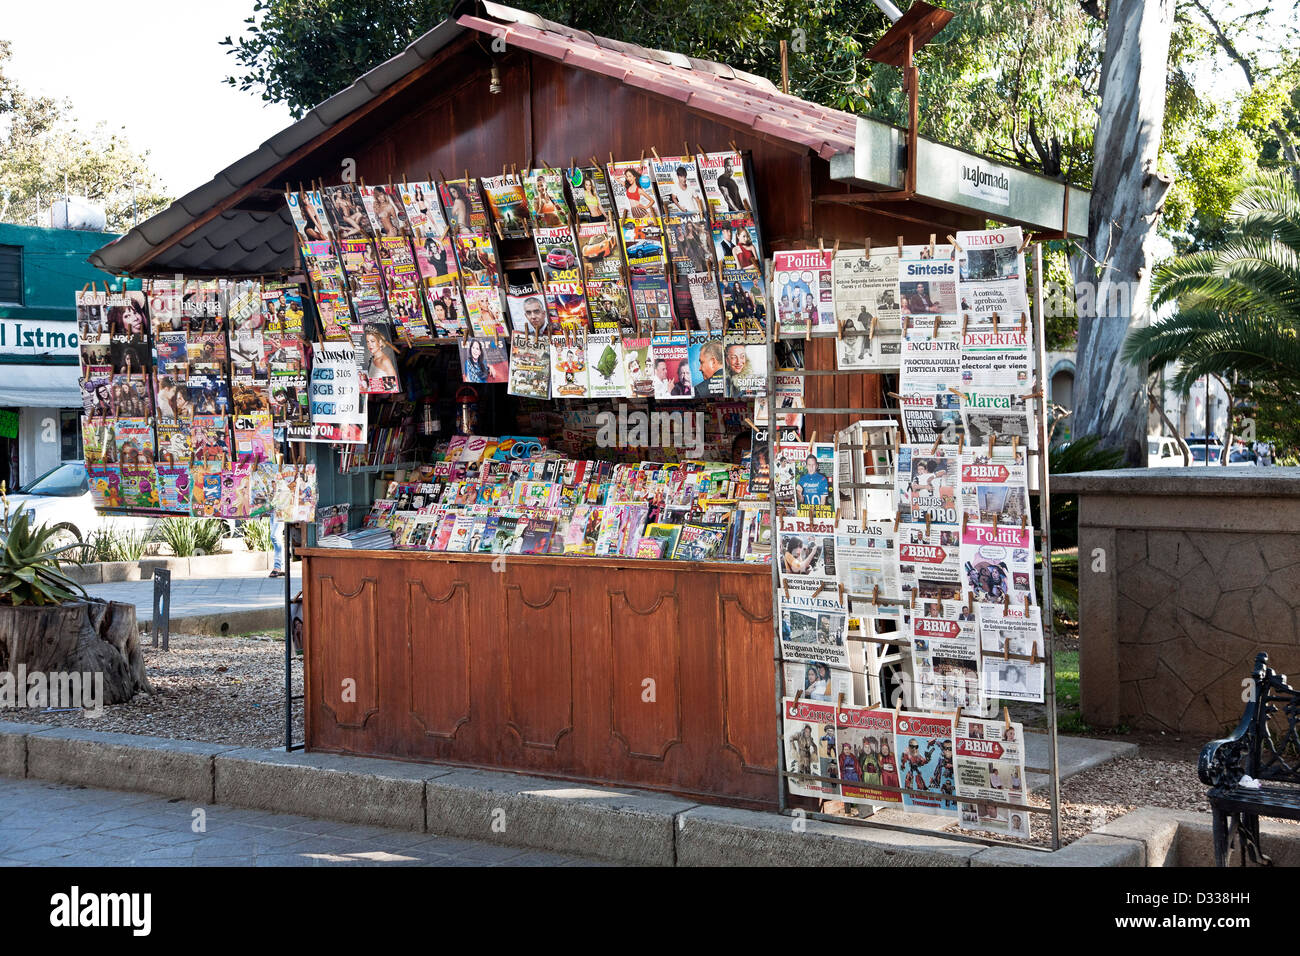 Contreplaqué - multiplex kiosque Kiosque avec toit de tuiles de faux et beaucoup de journaux périodiques à bord de Llano park Oaxaca Mexique Banque D'Images